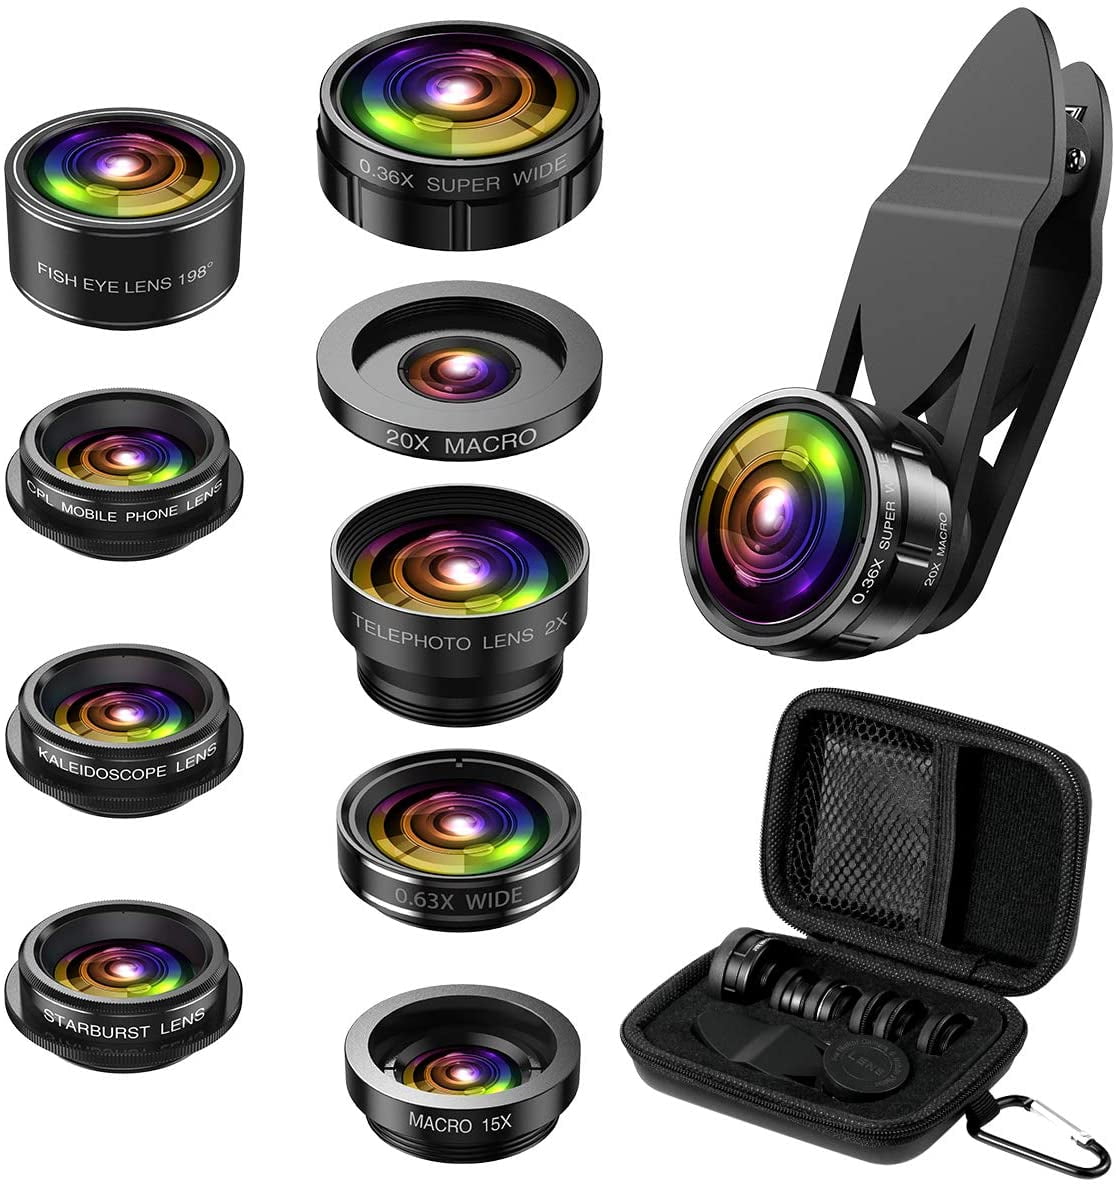 Starburst Lens Fisheye Lens CPL Upgraded 9 in 1 Phone Lens kit 0.36X Wide Angle Lens 15X Macro Lens 20X Macro Lens 0.63X Wide Lens Ankilo Phone Camera Lens 